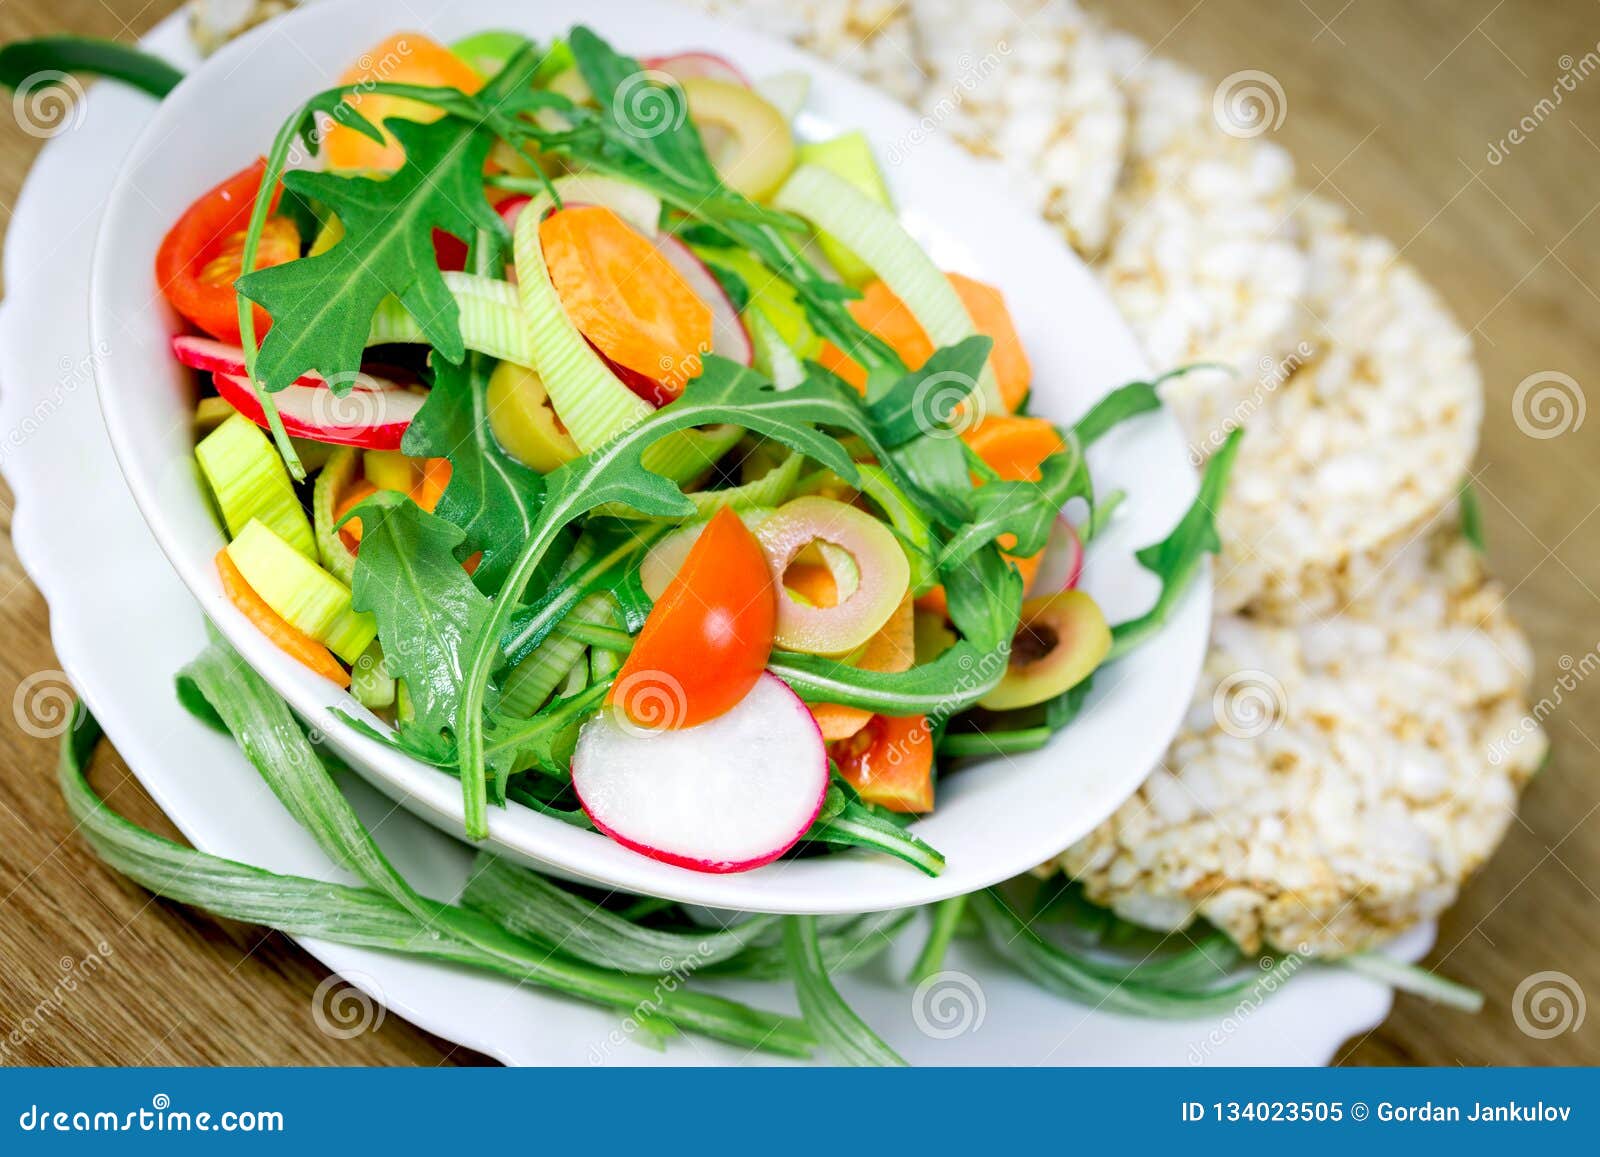 Healthy Vegetarian Meal Freshly Prepared Vegetable Salad Stock Image